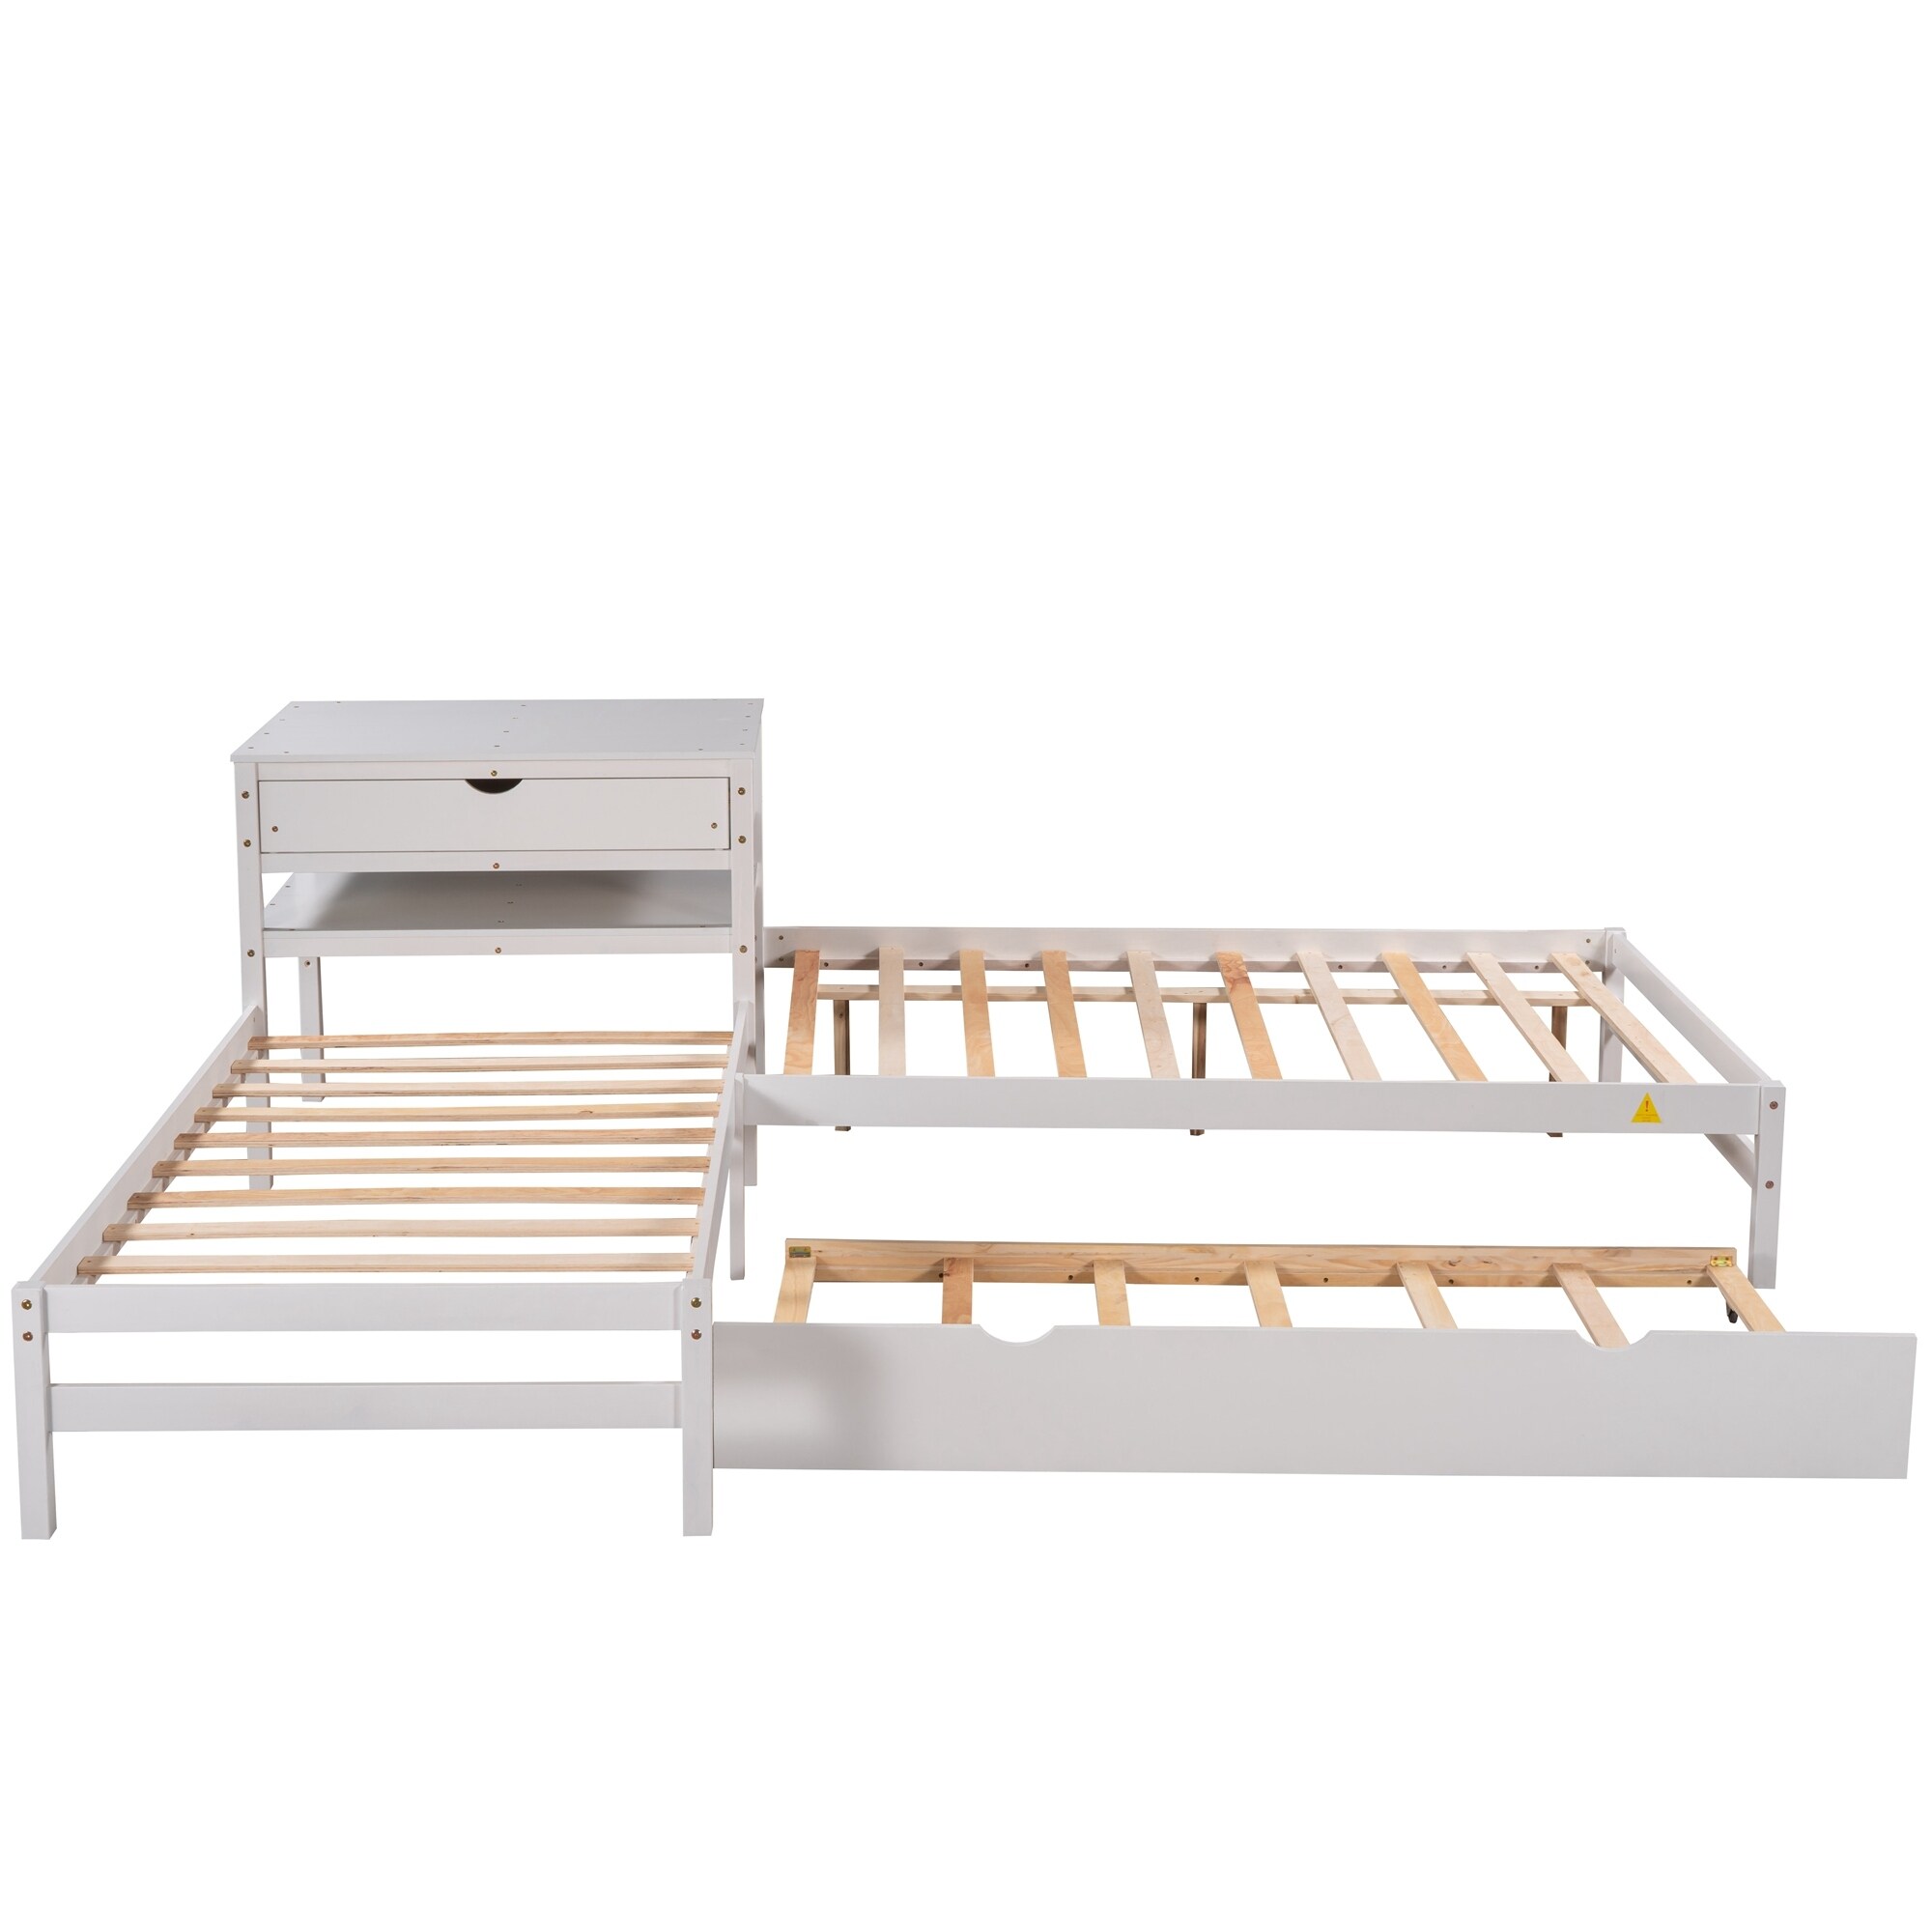 3 in 1 Design L-Shaped Corner Platform Beds with Desk&Trundle&Drawer